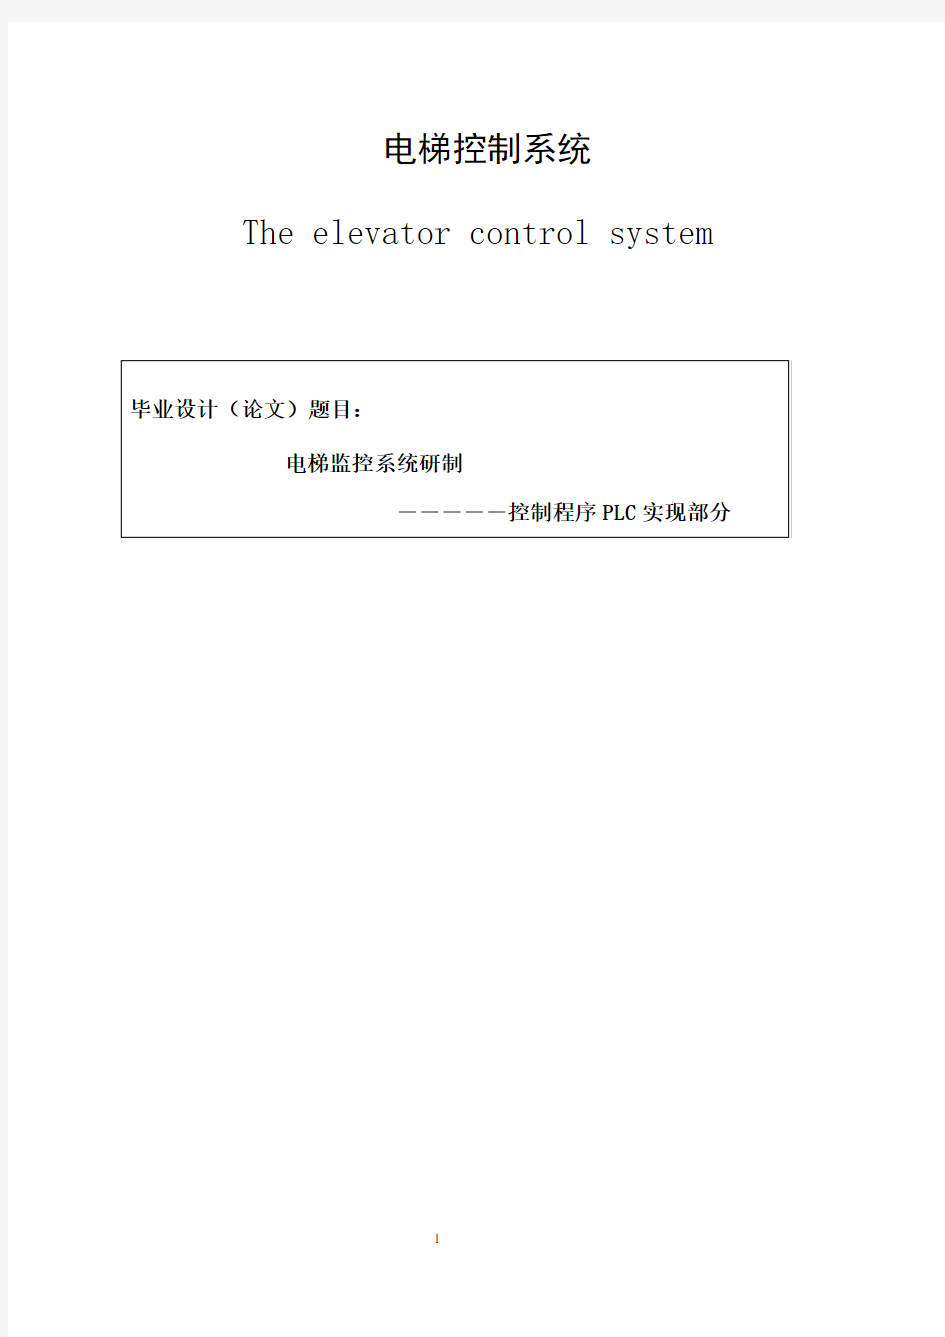 西门子PLC控制的五层电梯系统